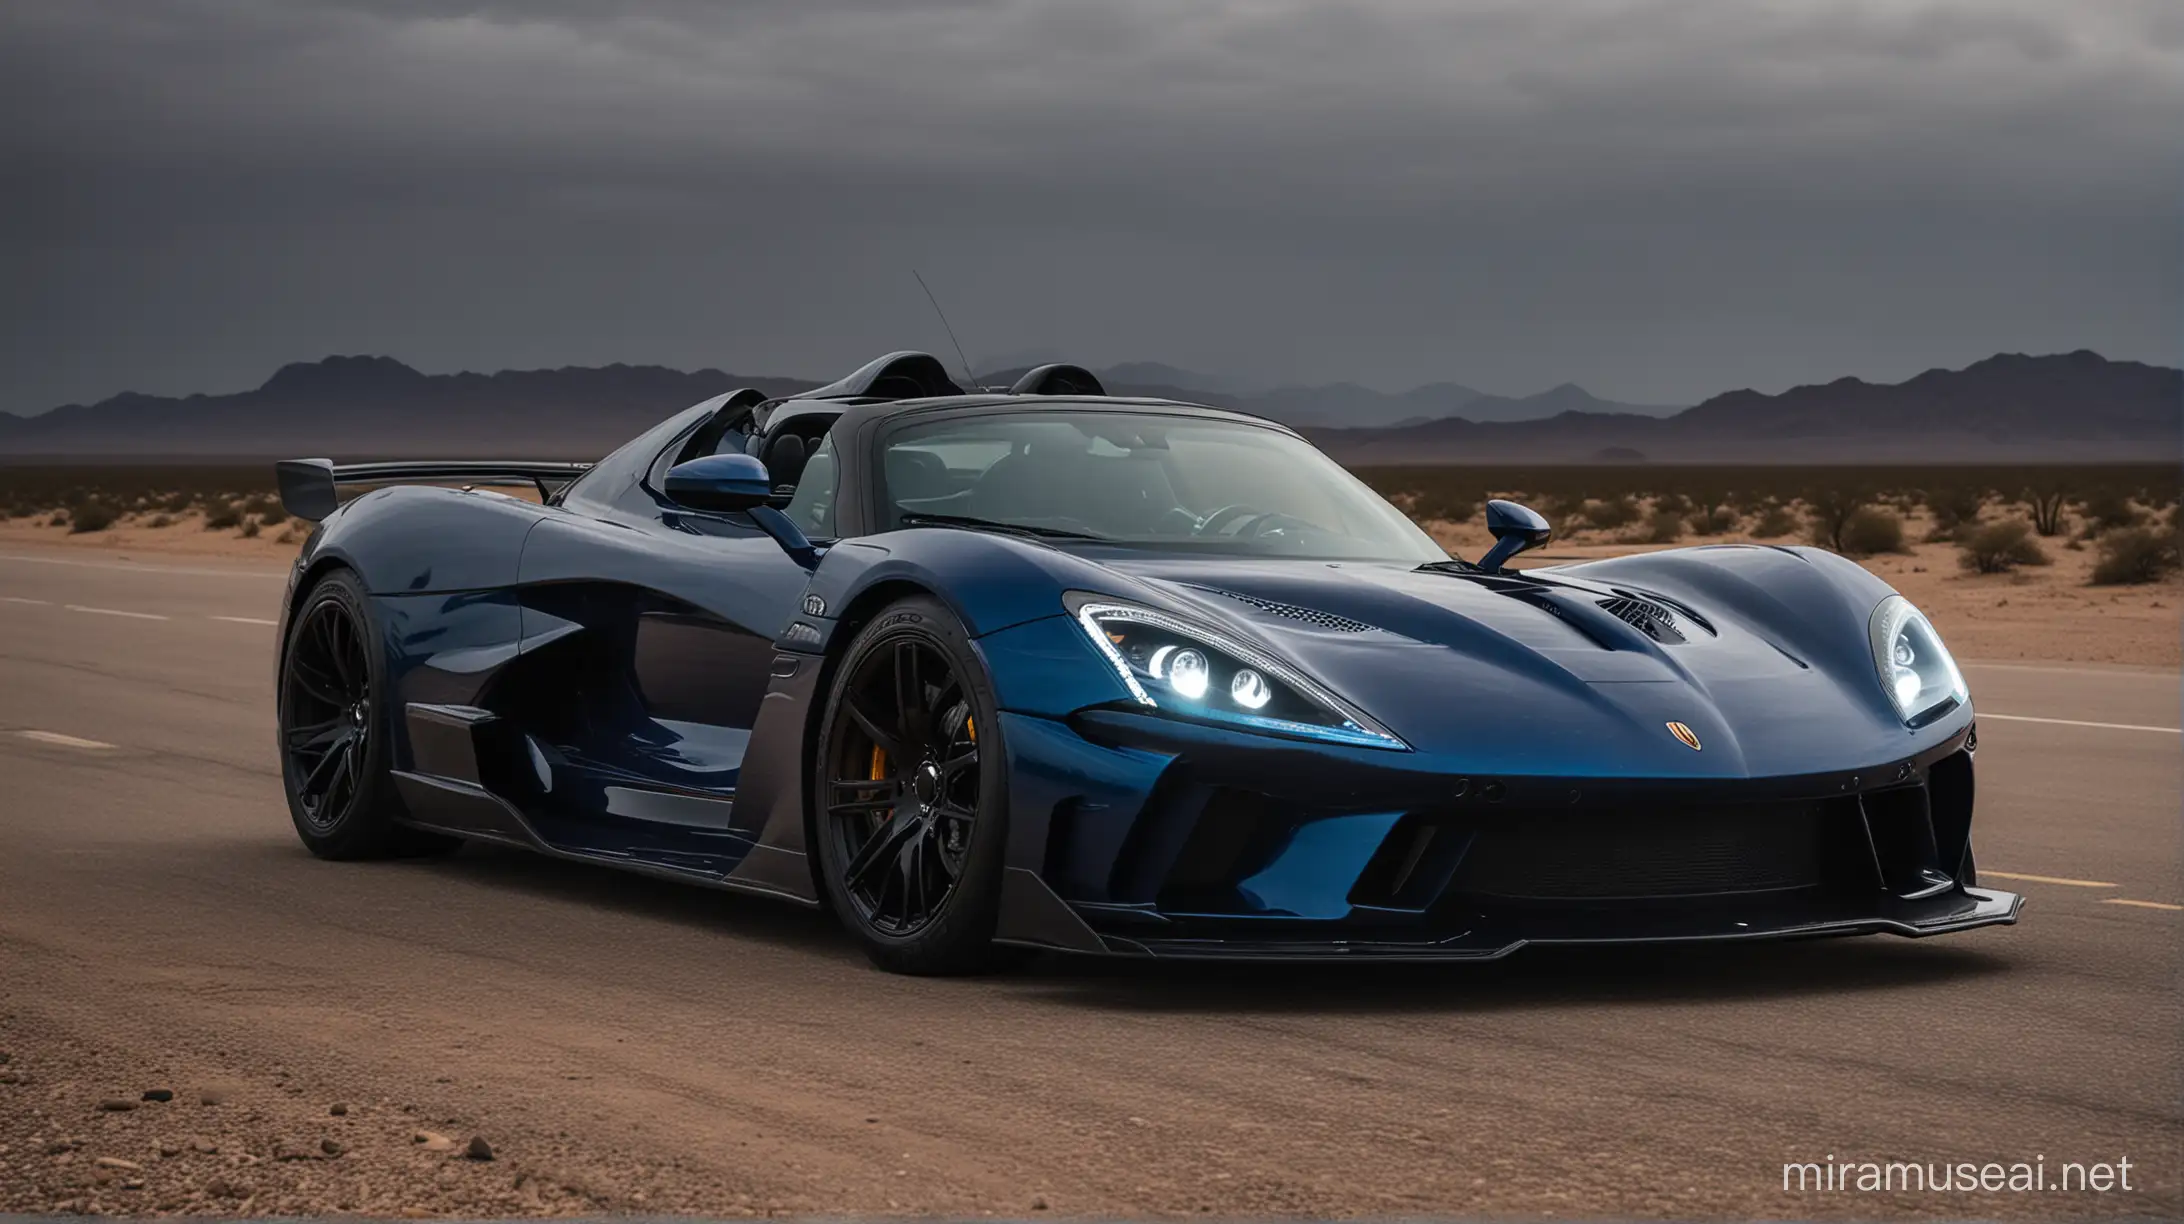 Powerful Dark Blue Hennessey Venom F5 Roadster Emerges in Desert Night